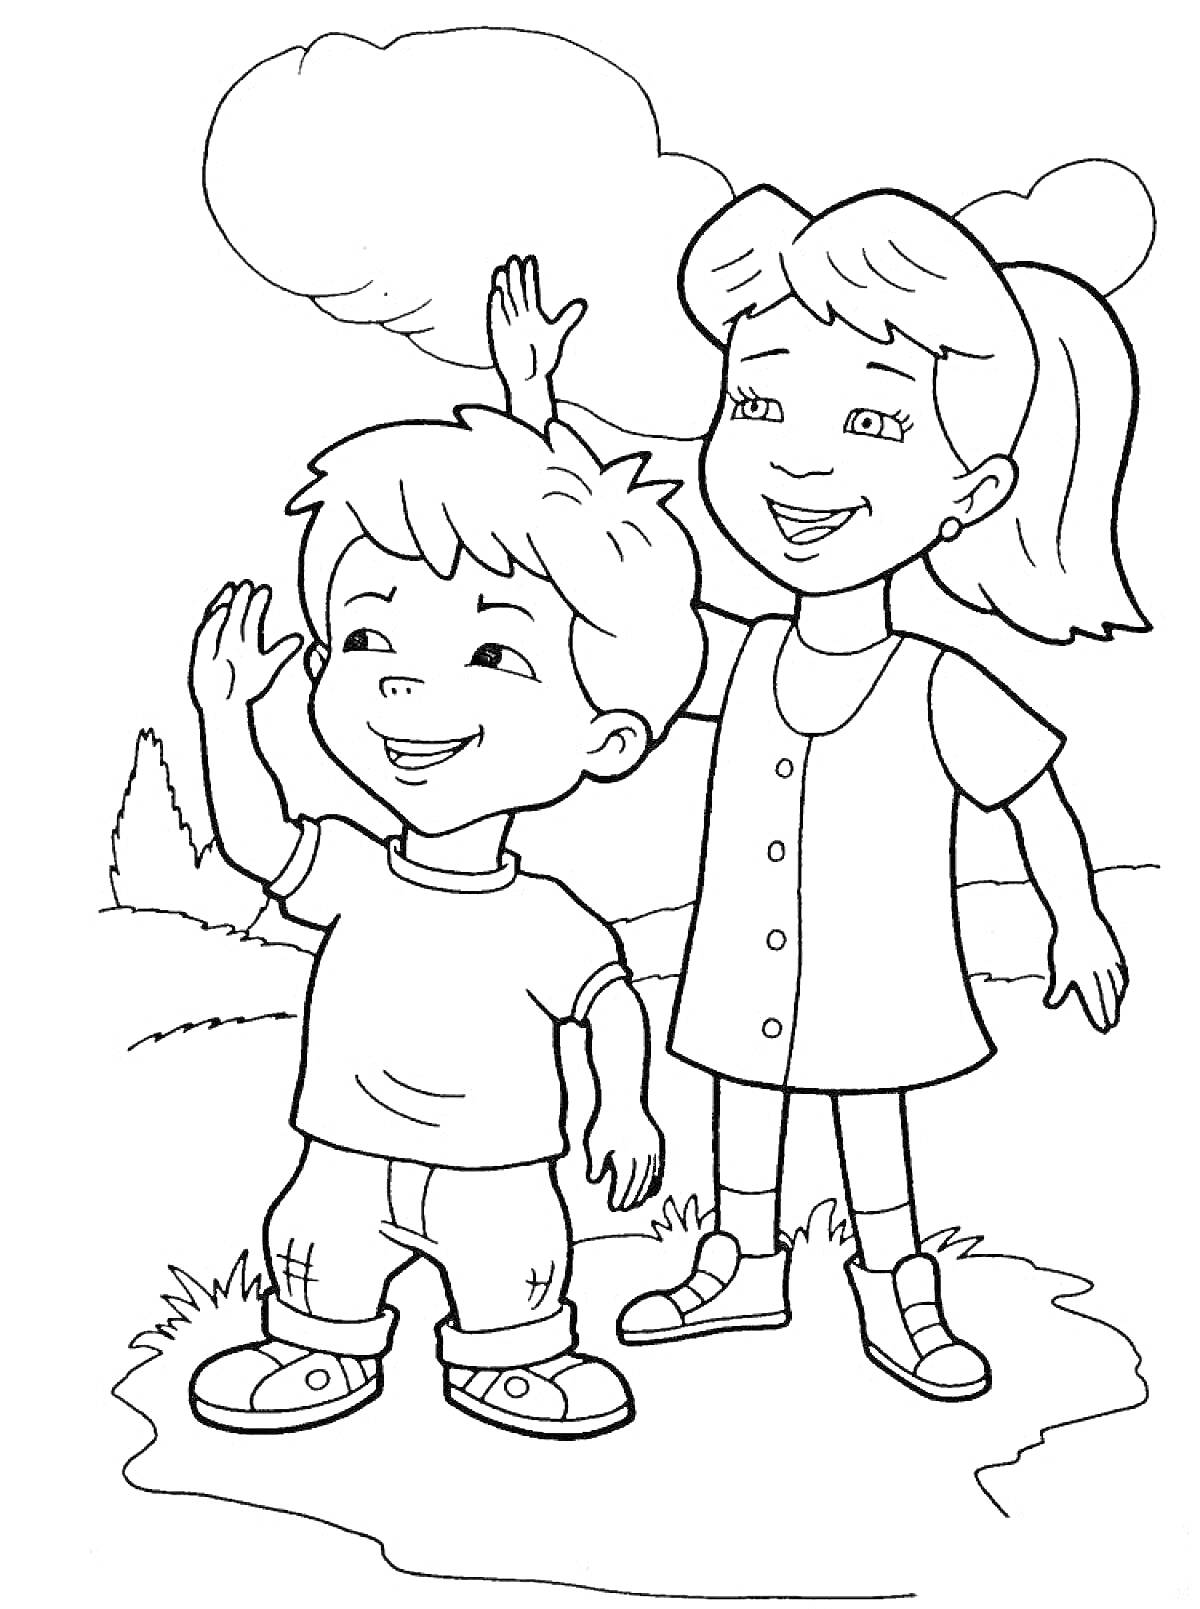 дети, мальчик и девочка, стоят на траве, машут руками, деревья и облака на заднем плане